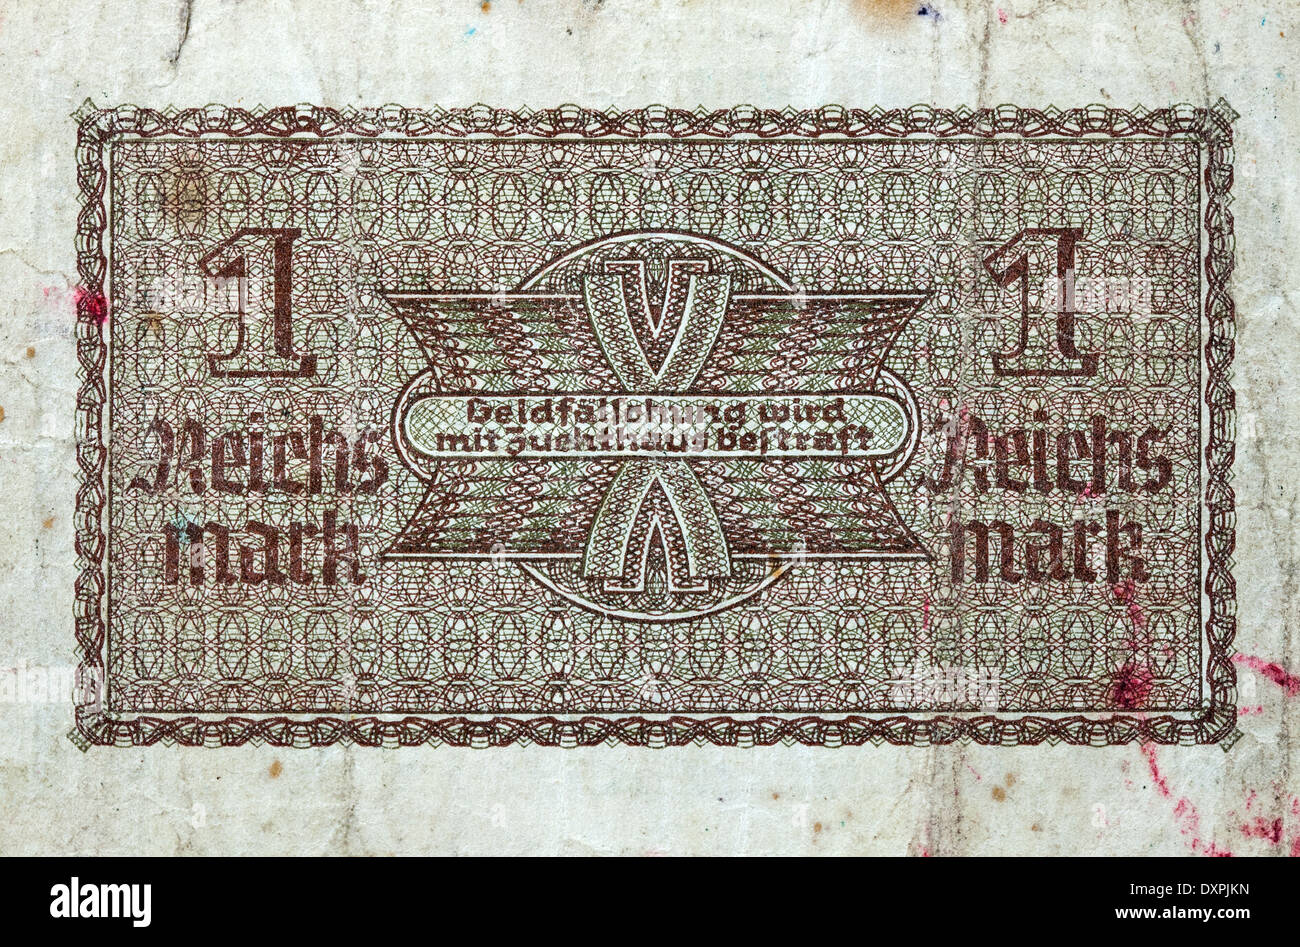 1 Reichsmark billets 1938-1945 verso blanc macro contre. Billets en euros pour la circulation dans les territoires occupés Banque D'Images